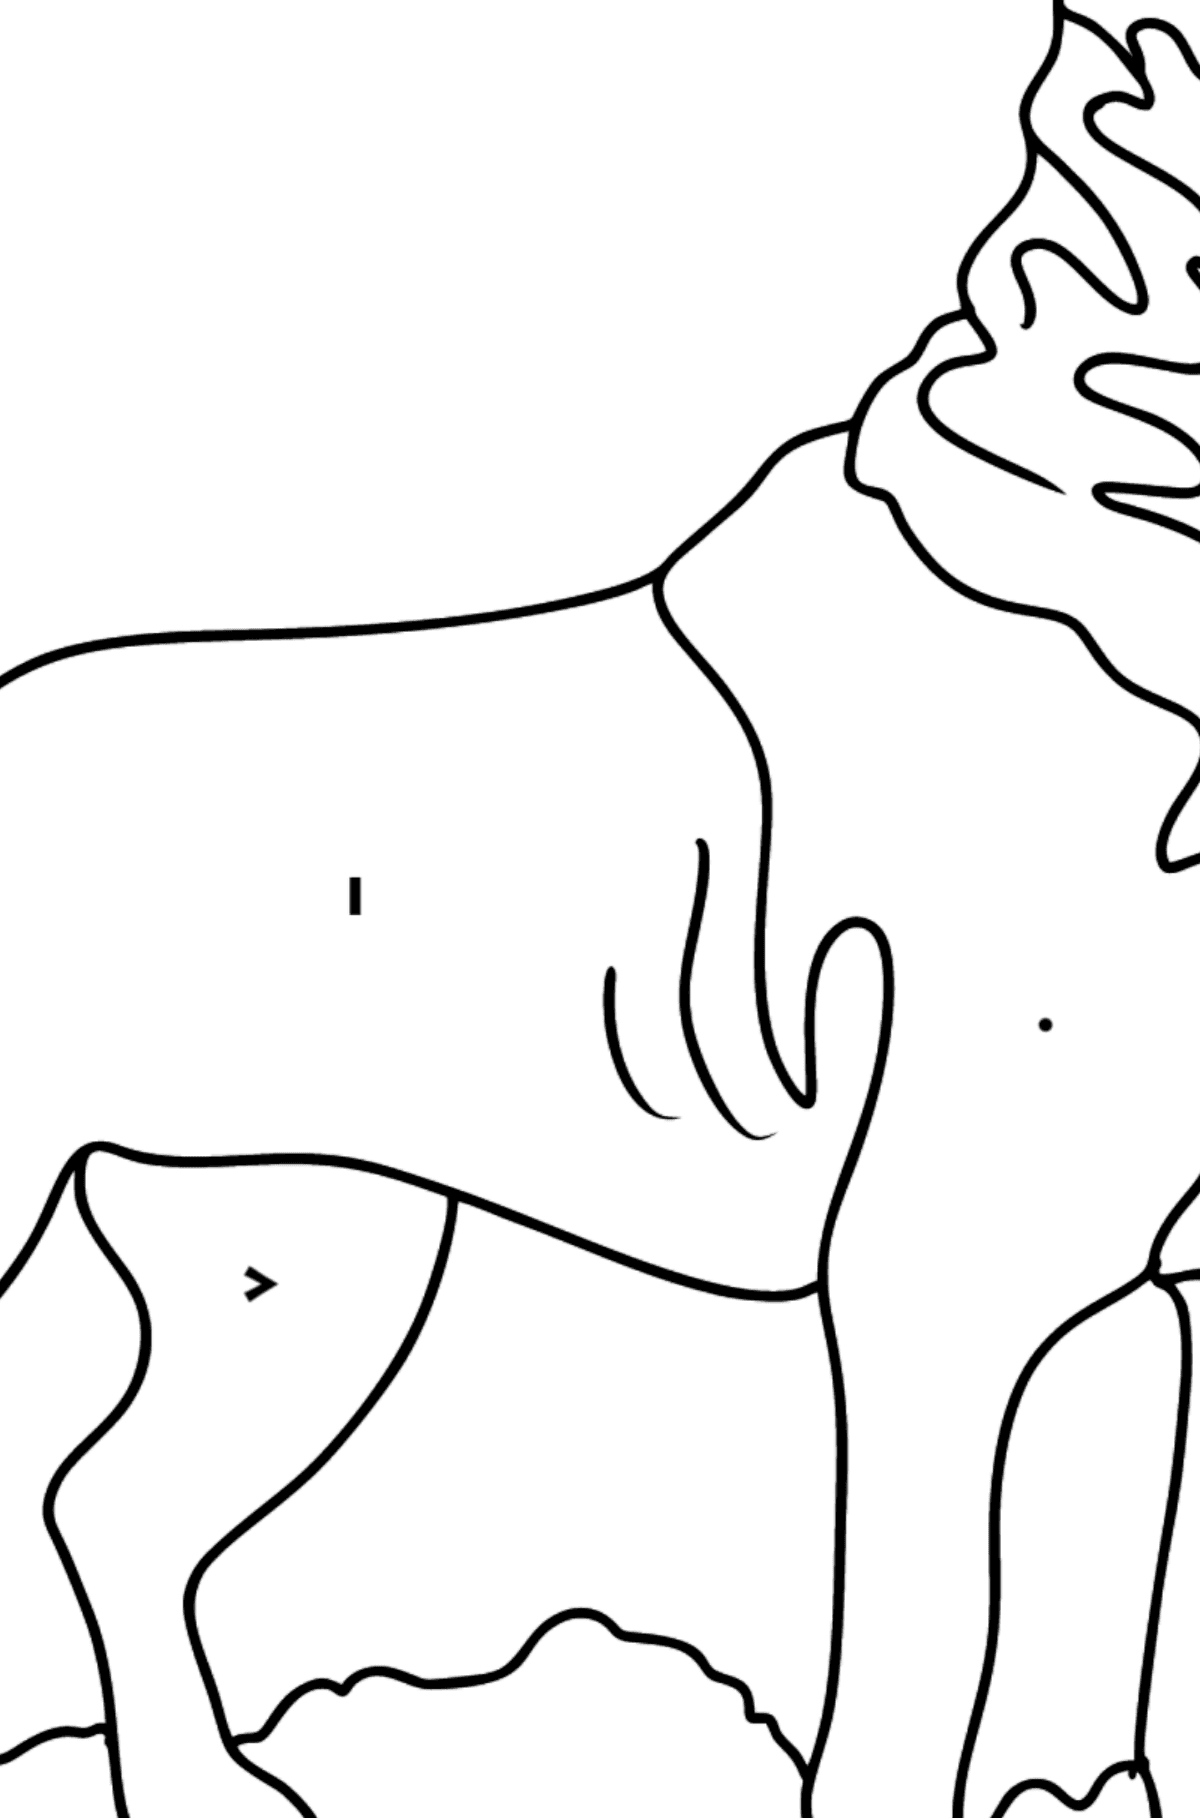 Dibujo de Rottweiler para colorear - Colorear por Símbolos para Niños